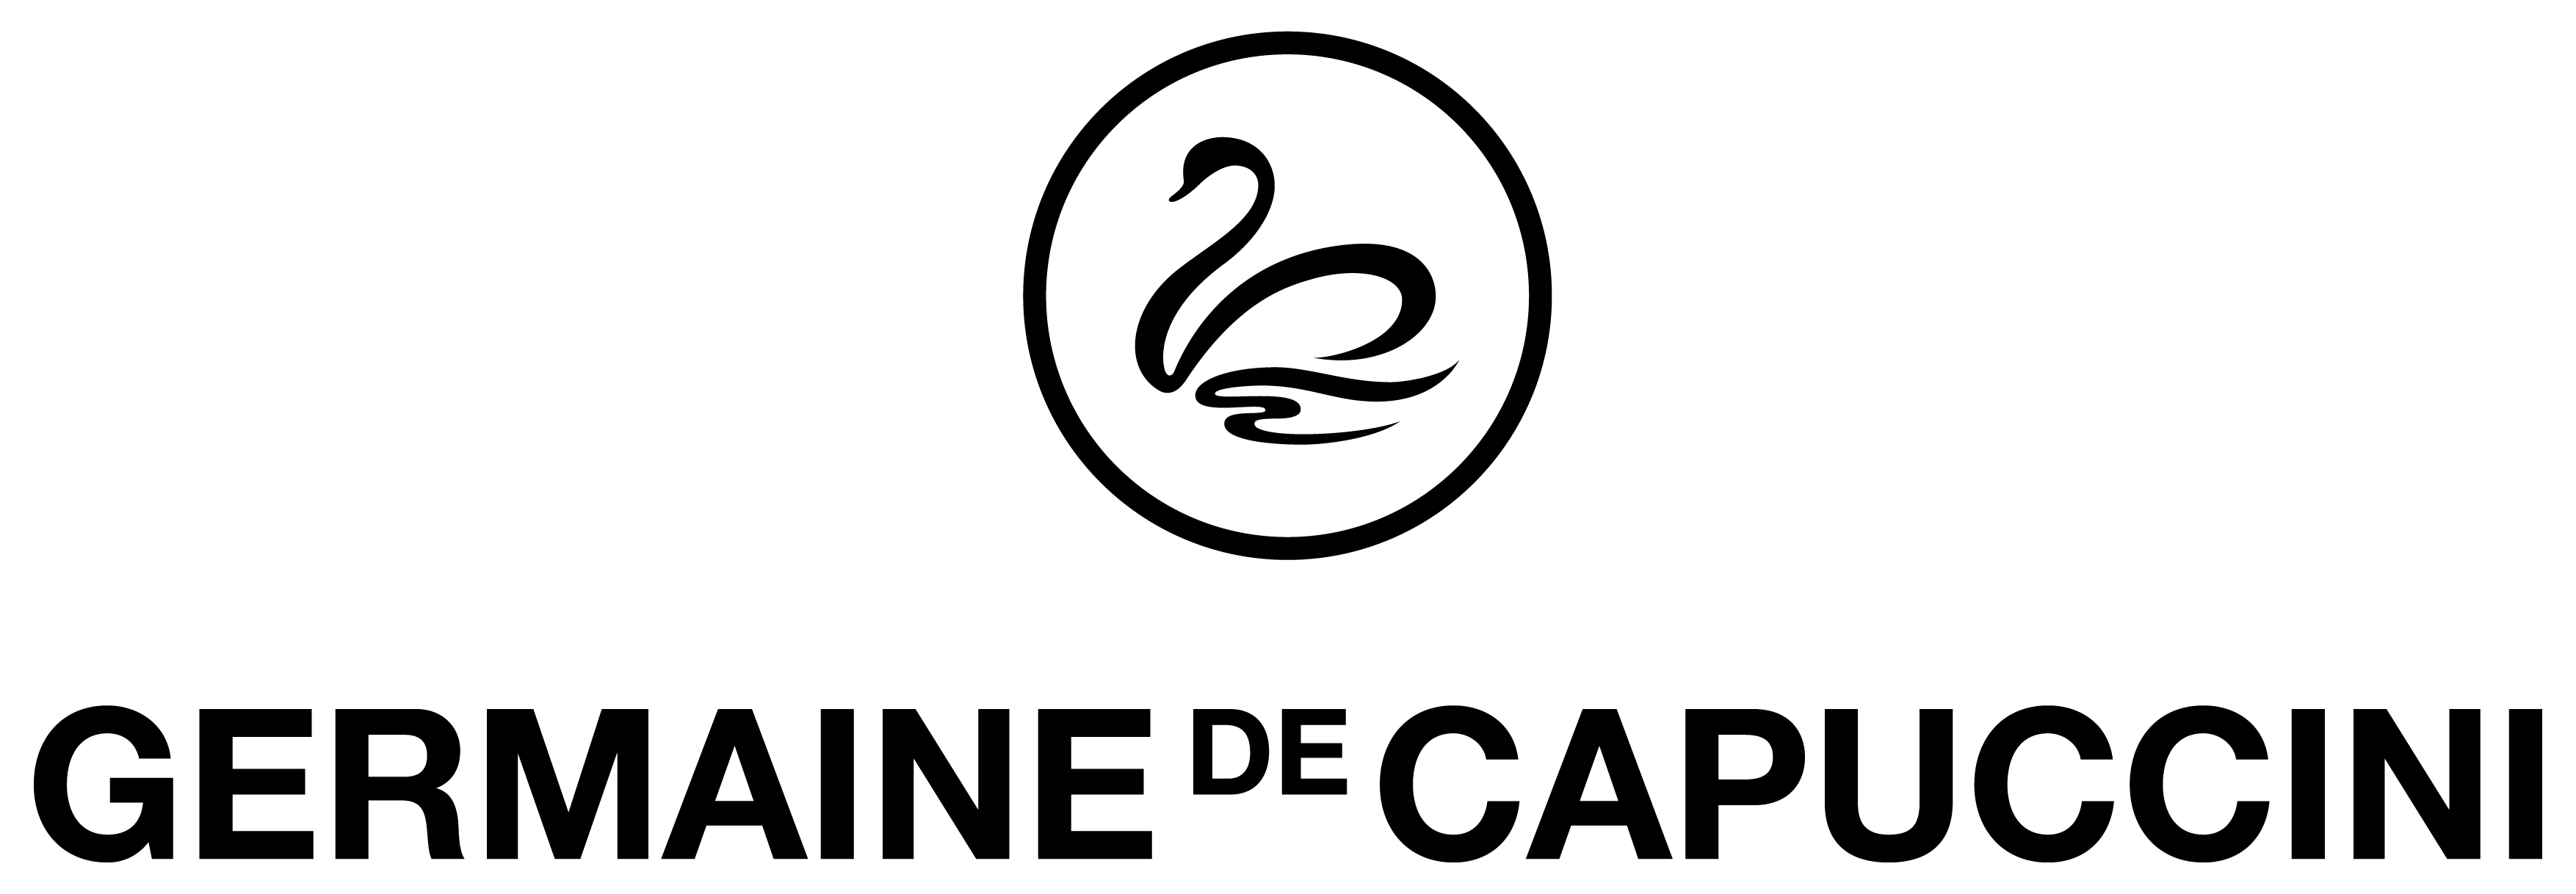 logo capuccini